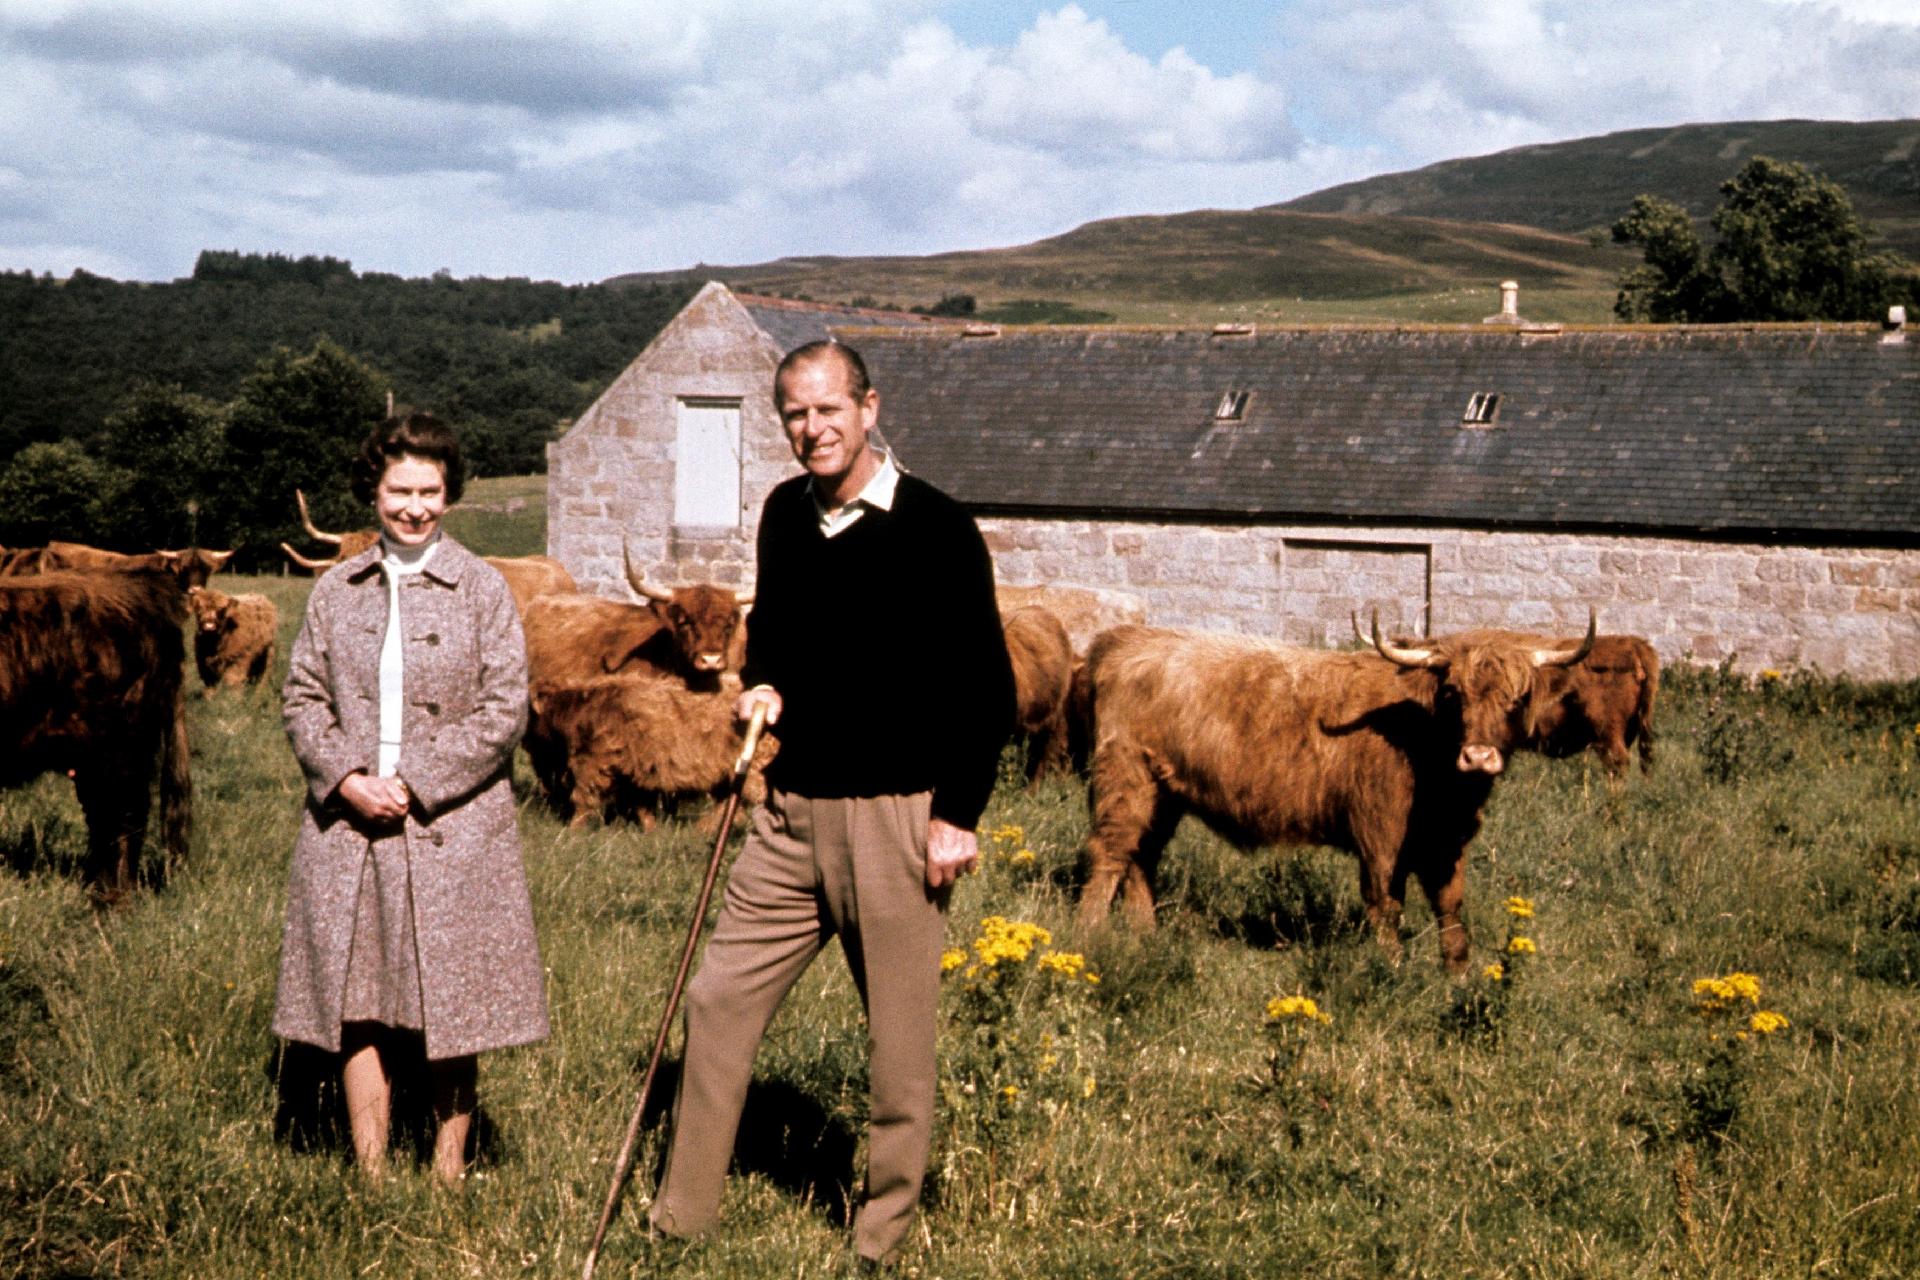 Elizabeth and Philip at Balmoral - Reproduction/Royal UK